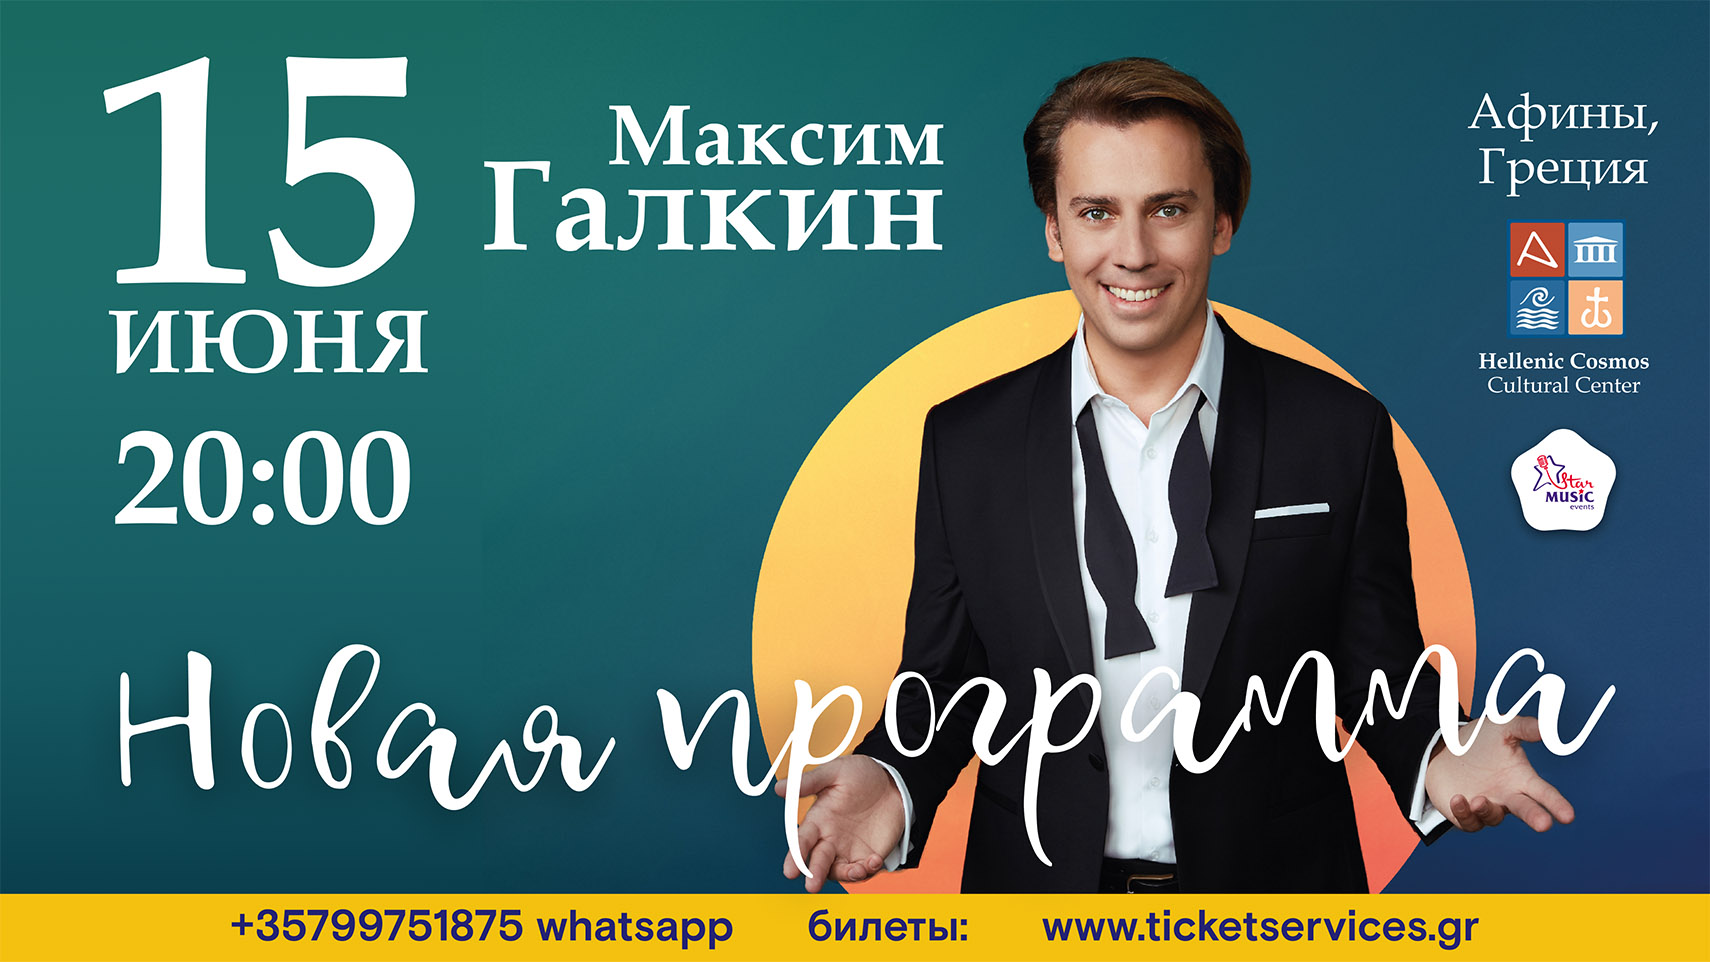 Билеты на концерт Максима Галкина 